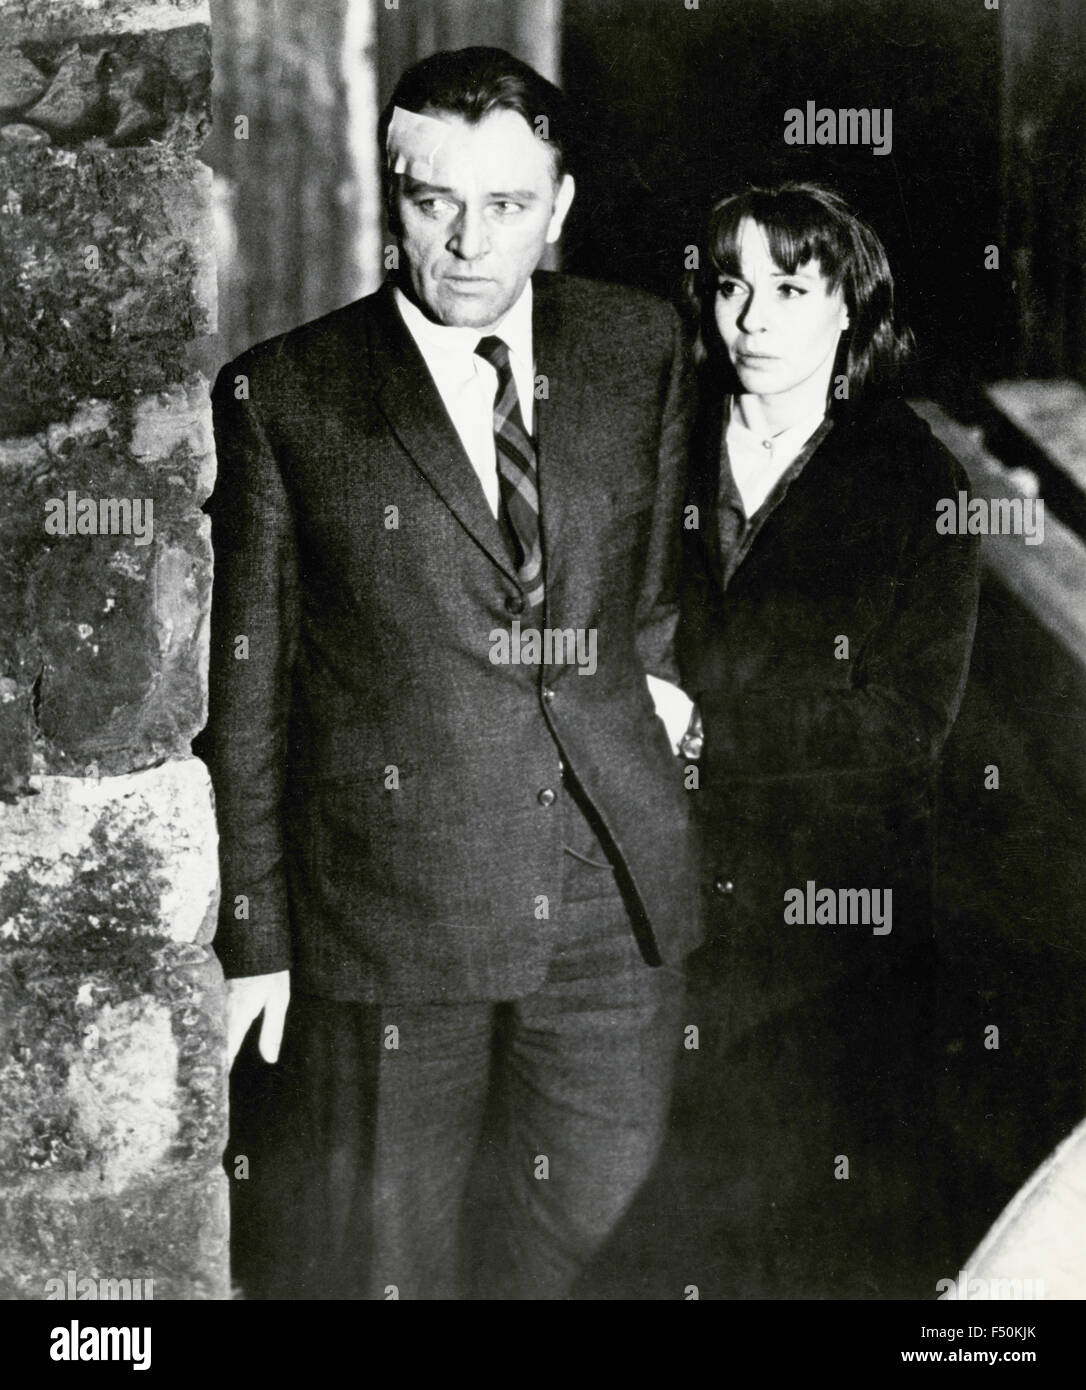 Schauspieler Richard Burton und Claire Bloom in einer Szene aus dem Film "The Spy Who Came in from the Cold", UK 1963 Stockfoto